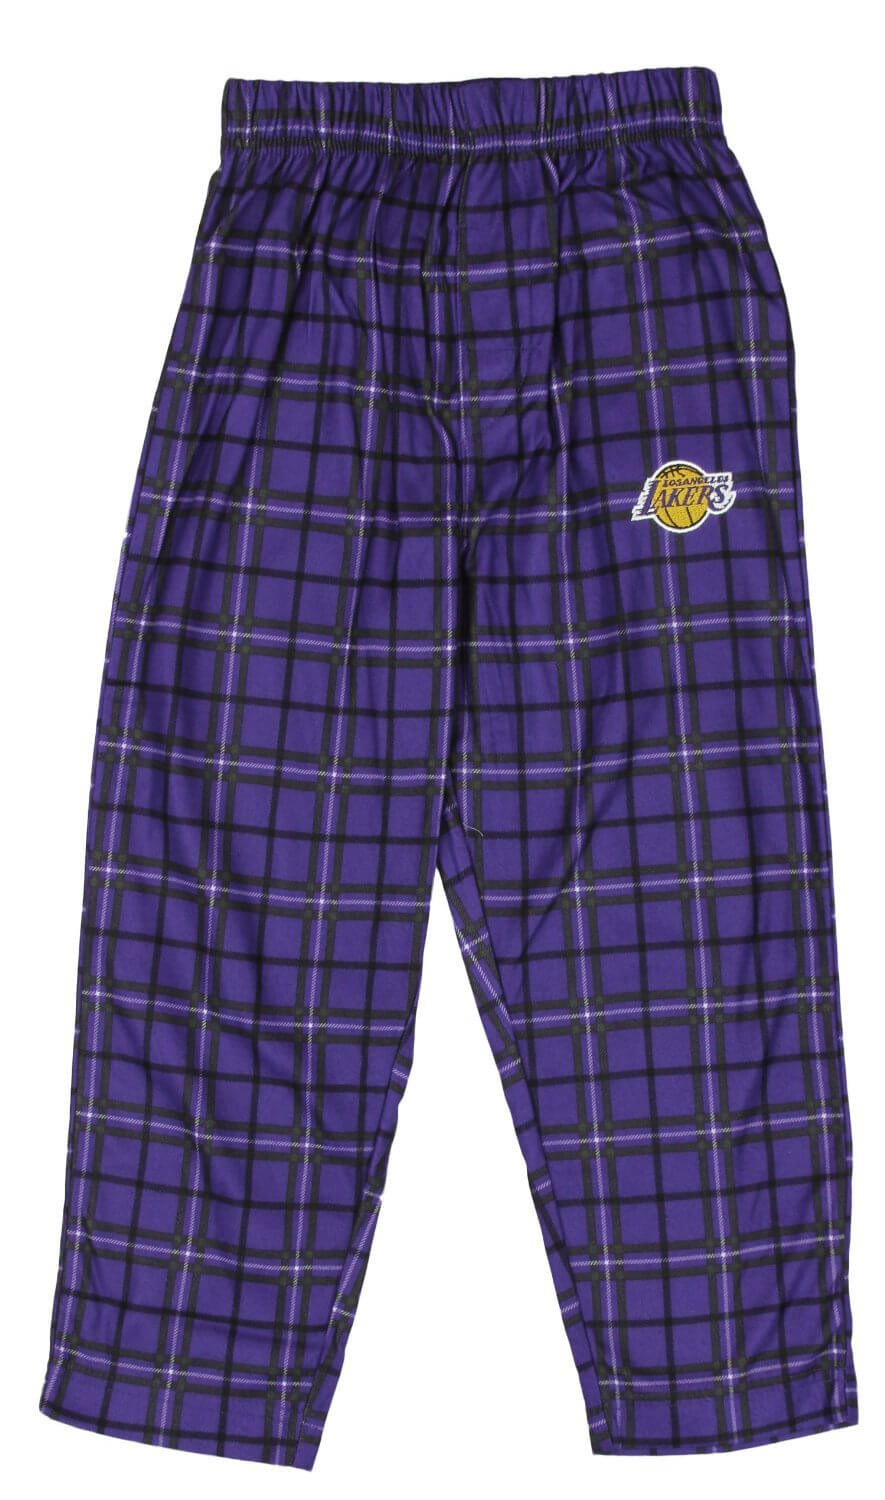 NBA, Pajamas